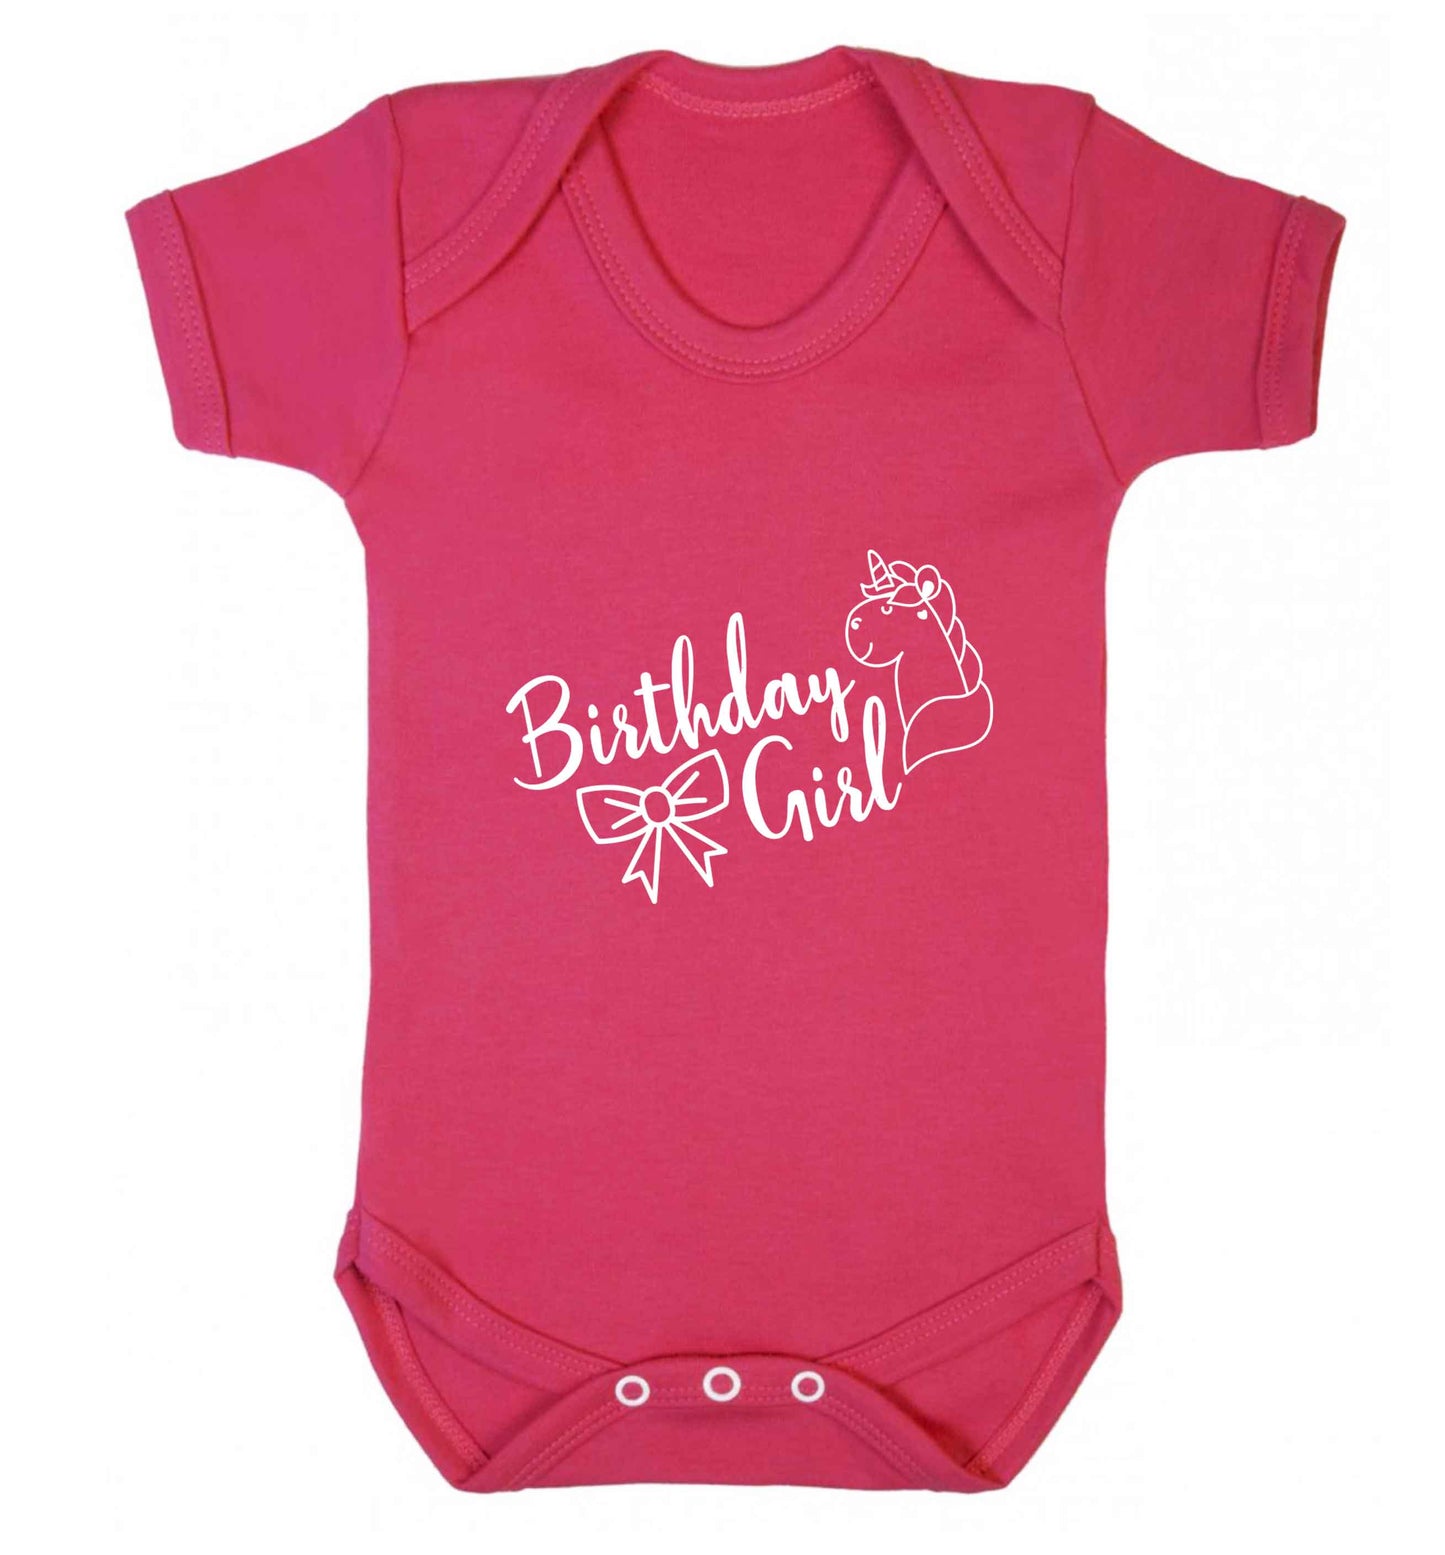 Birthday girl baby vest dark pink 18-24 months